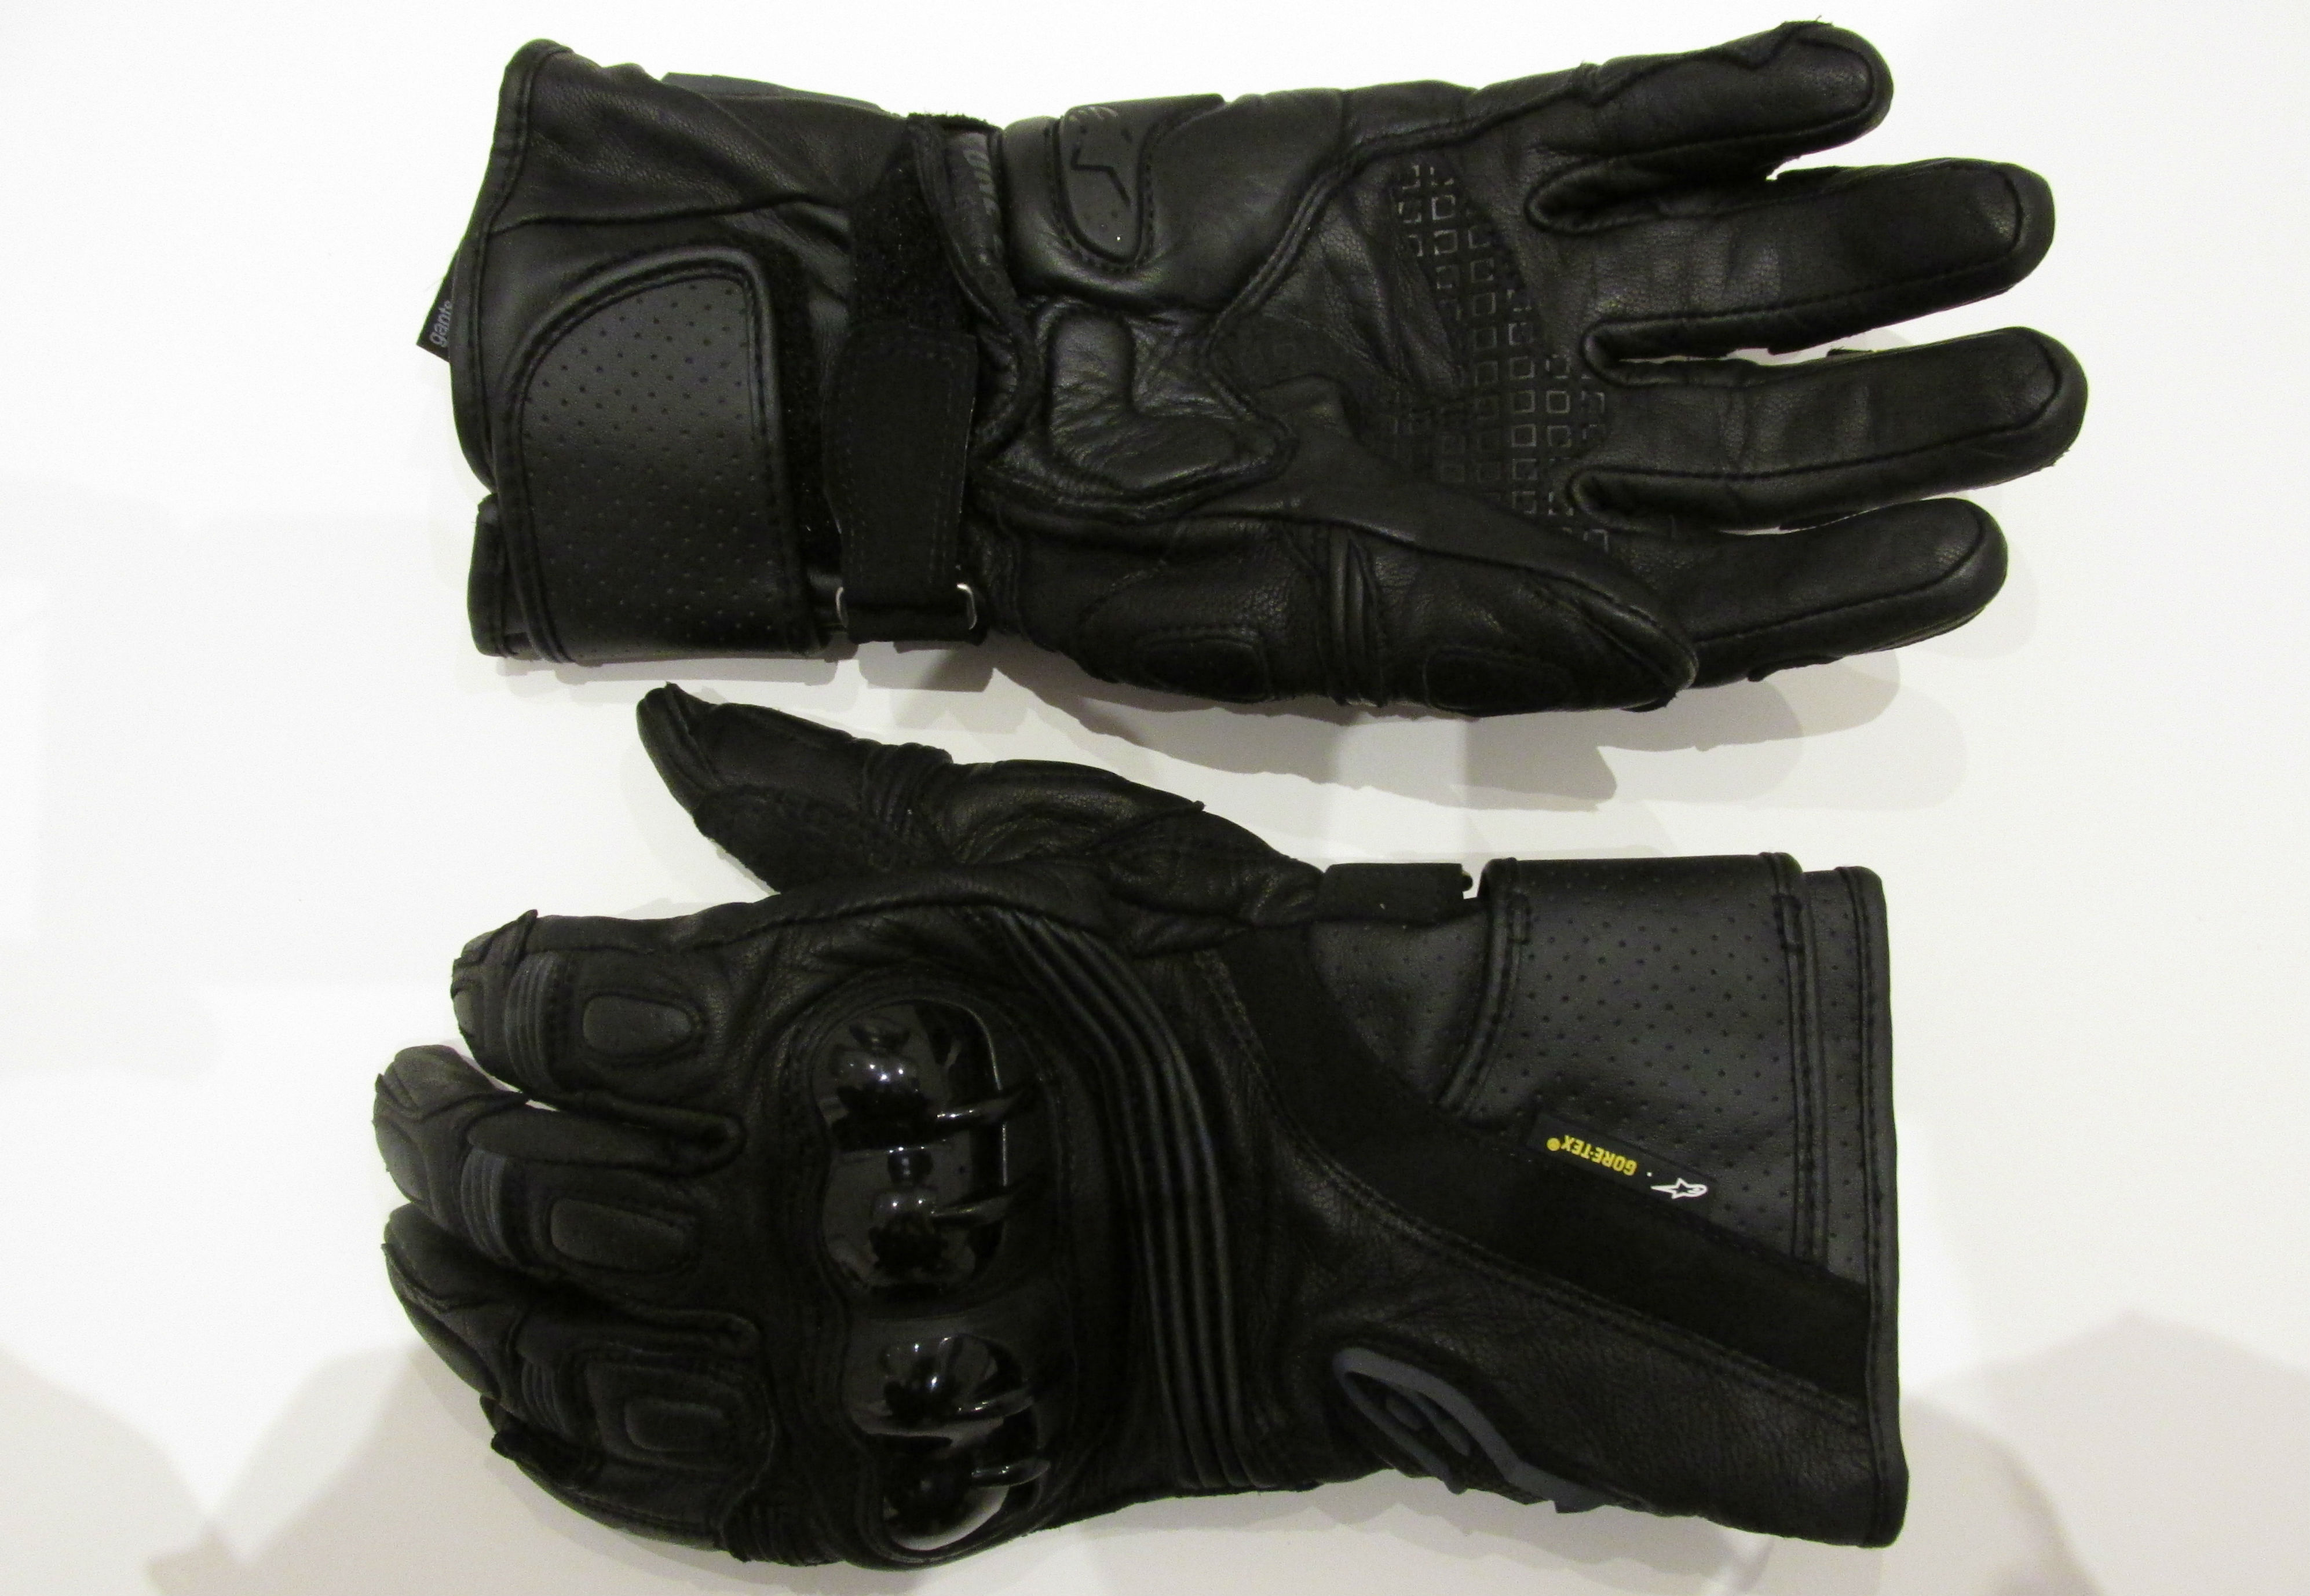 Review: Alpinestars Archer Gore-Tex gloves